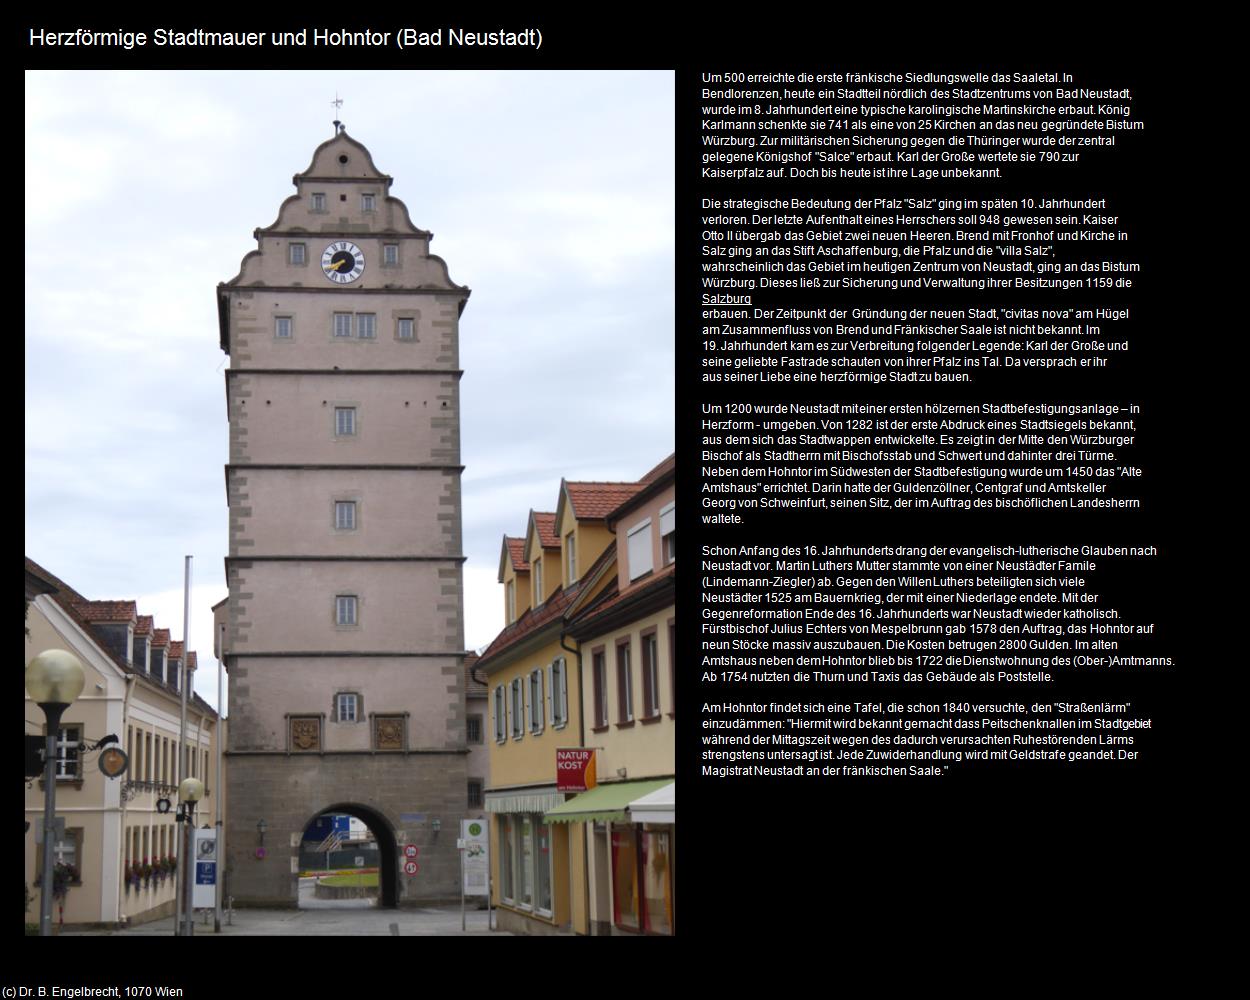 Herzförmige Stadtmauer und Hohntor (Bad Neustadt an der Saale) in Kulturatlas-BAYERN(c)B.Engelbrecht